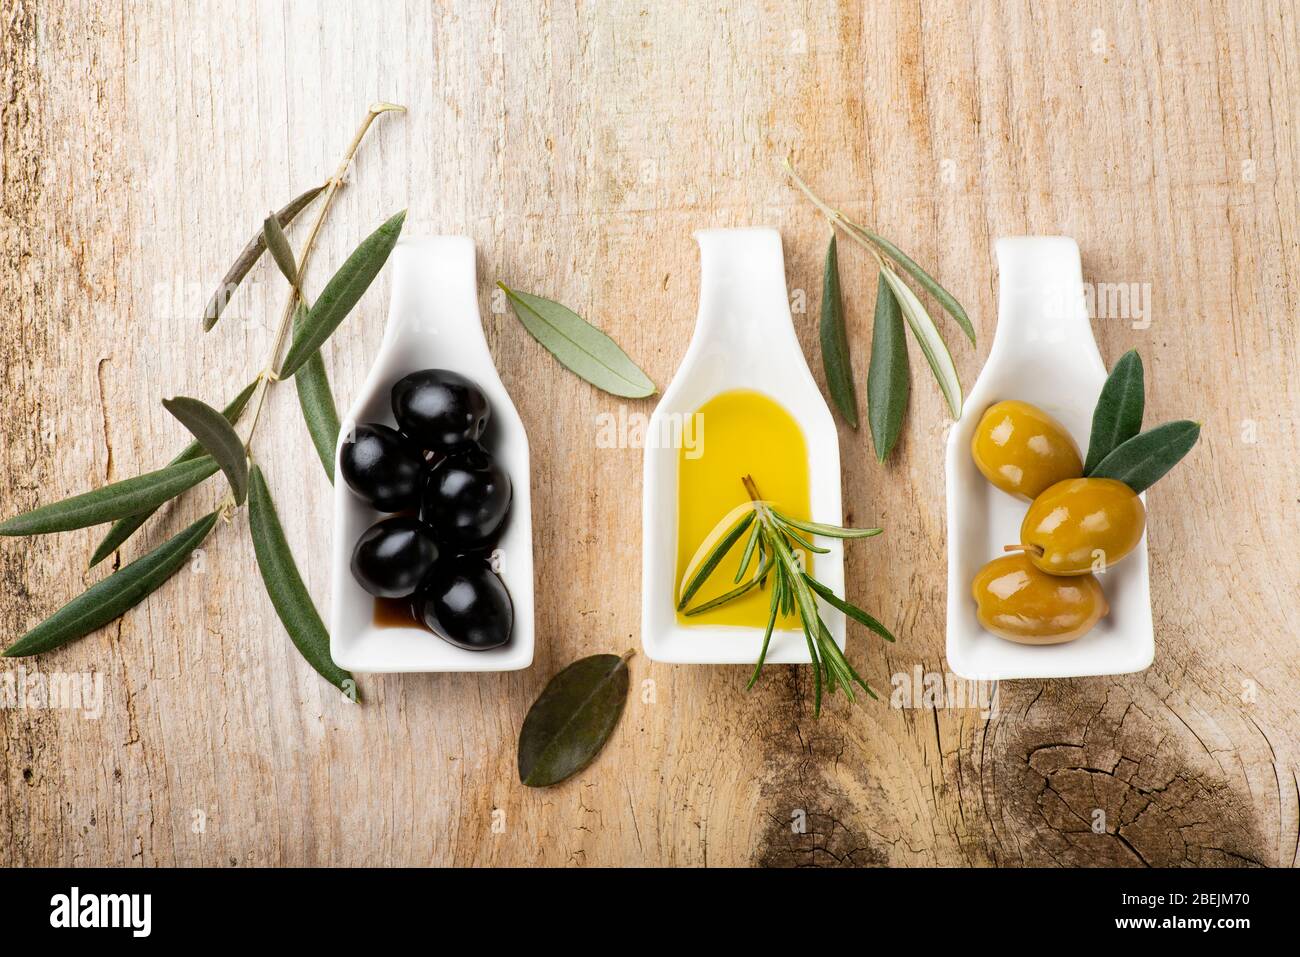 au premier plan, sur la table rustique en bois, quelques bols en céramique blancs avec des olives vertes et noires et de l'huile d'olive extra vierge. Banque D'Images